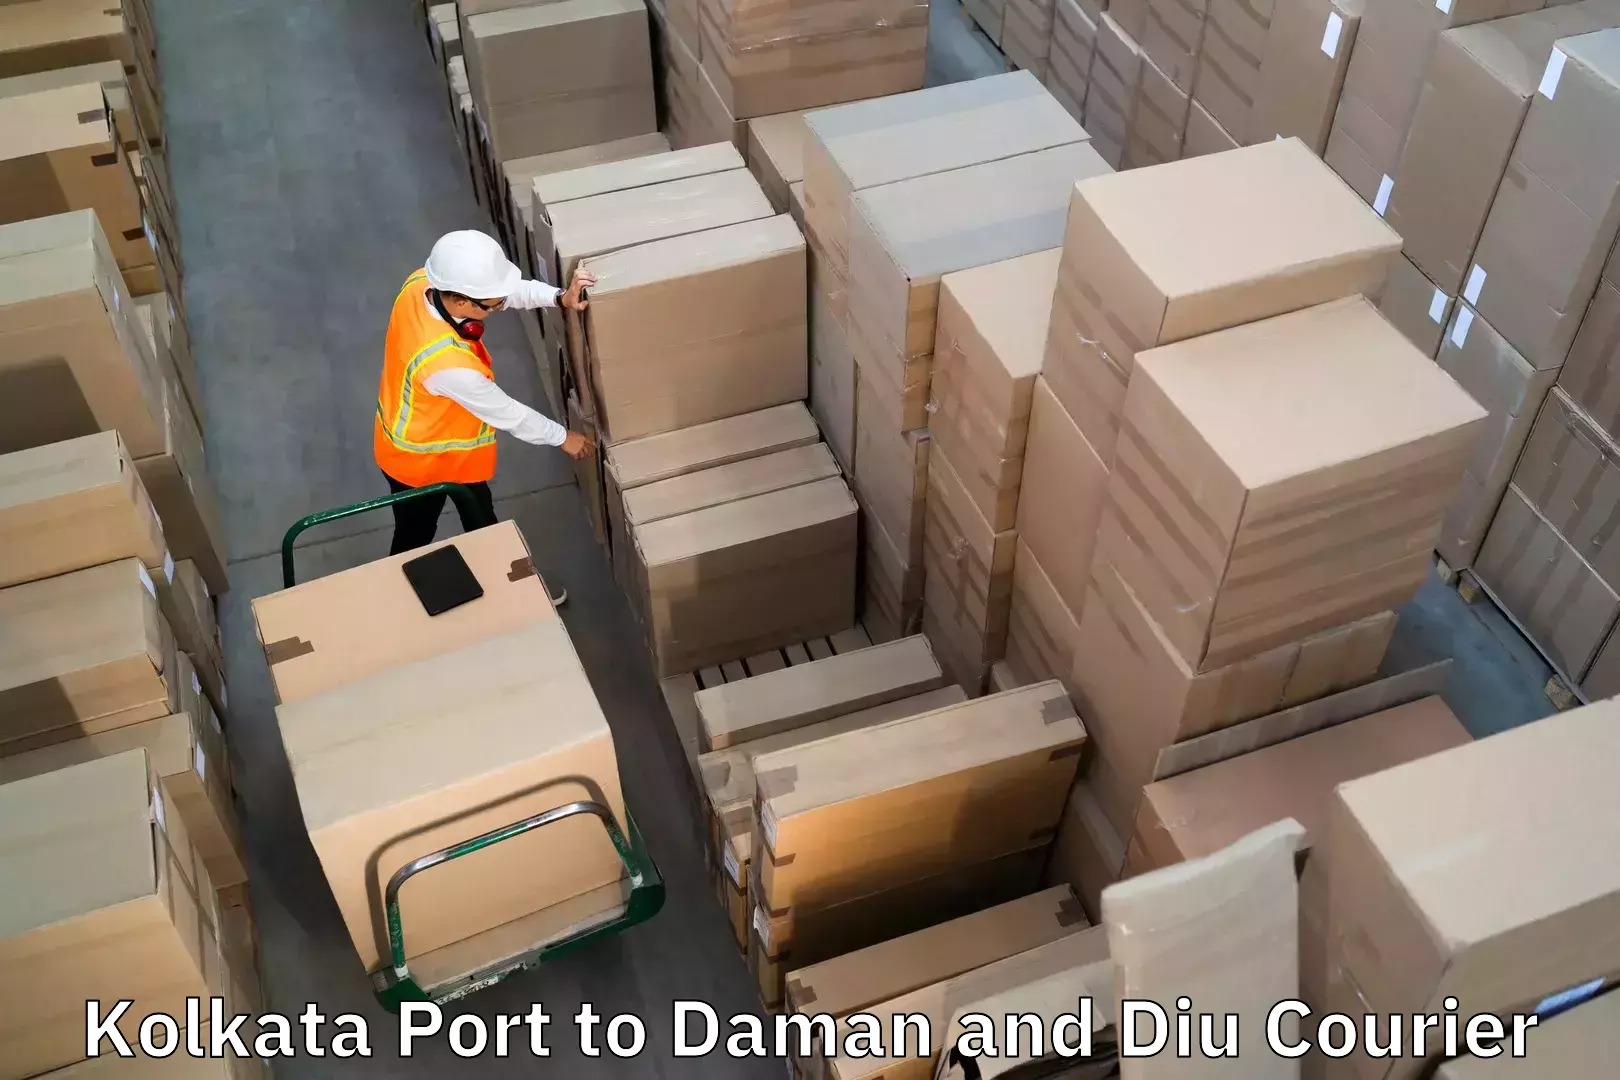 Luggage shipment strategy Kolkata Port to Diu